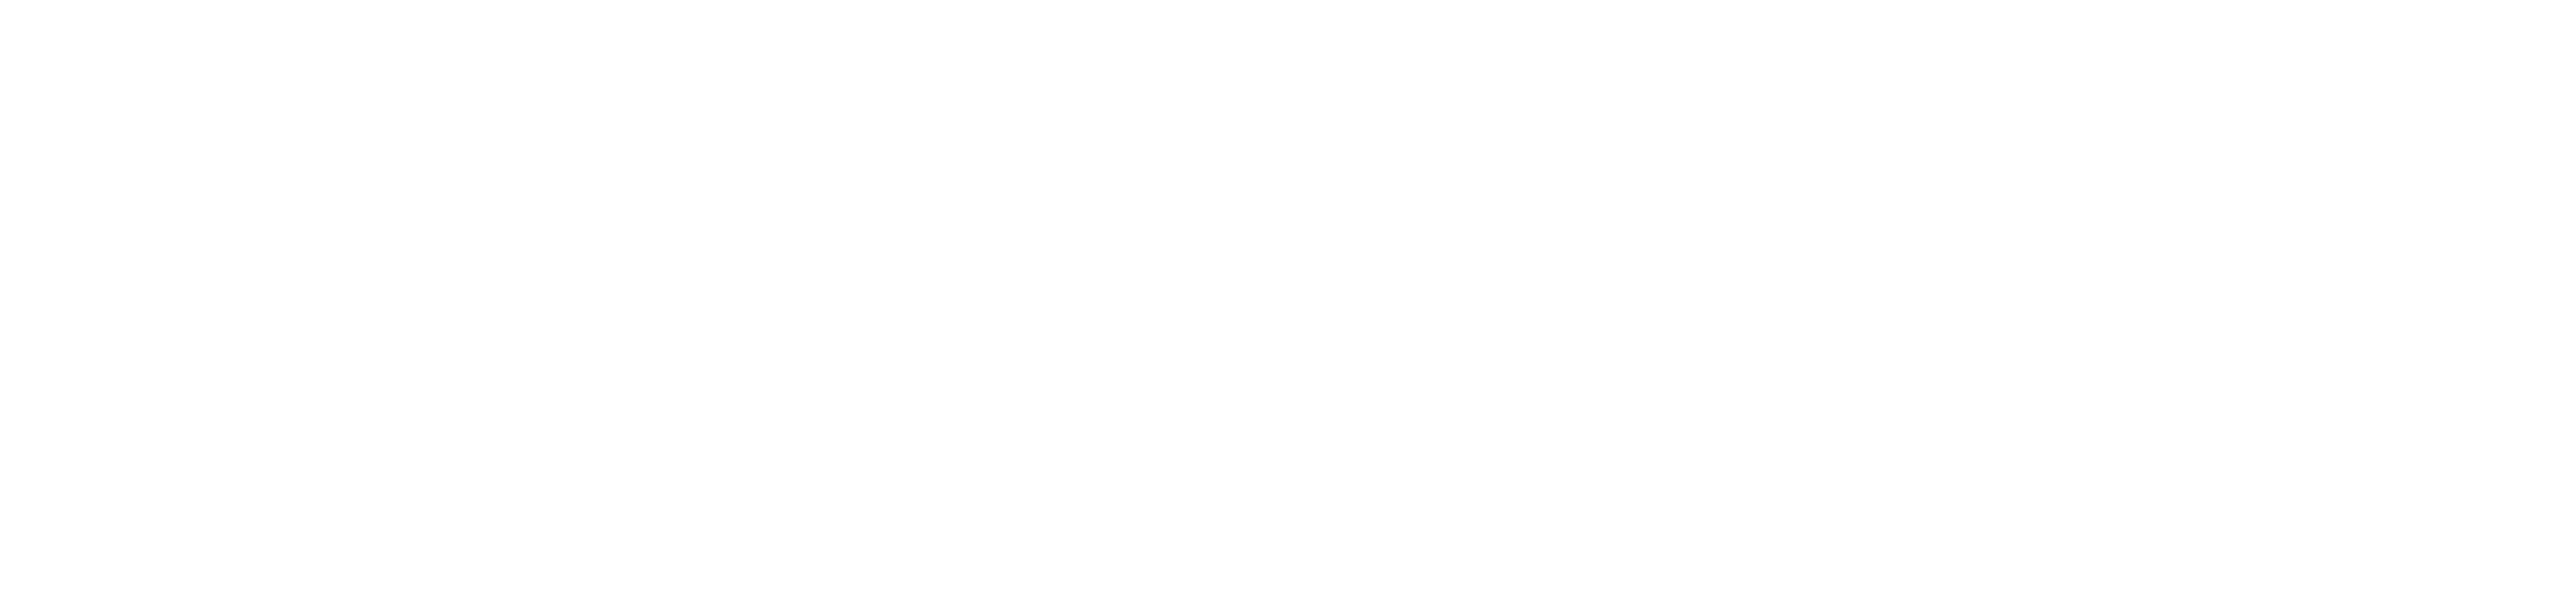 Congreso Tlaxcala